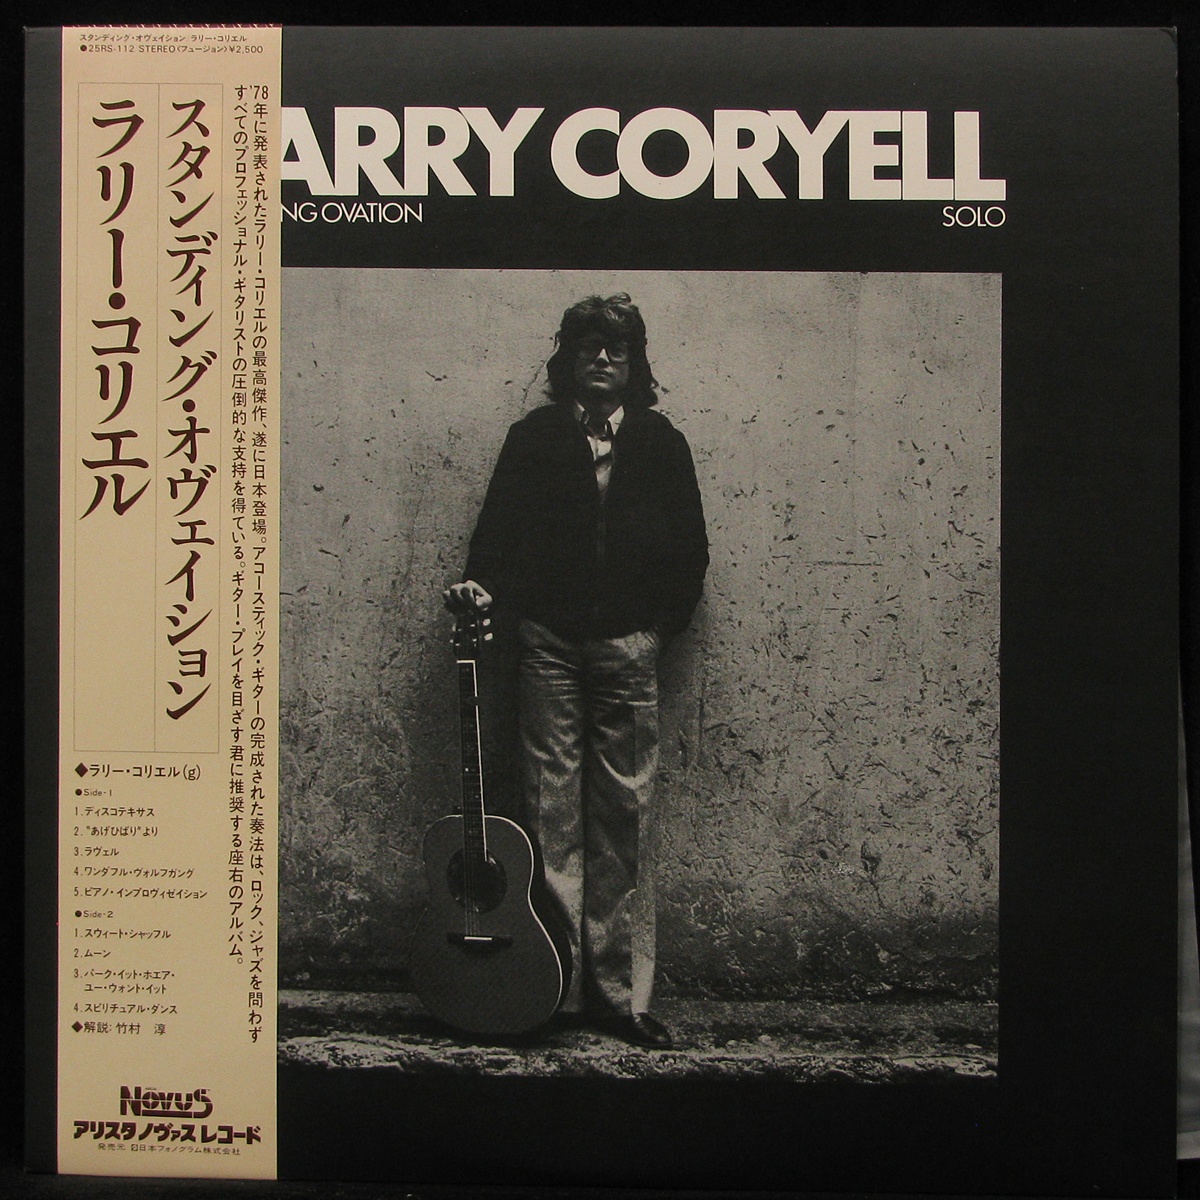 Купить виниловую пластинку Larry Coryell - Standing Ovation - Solo ...